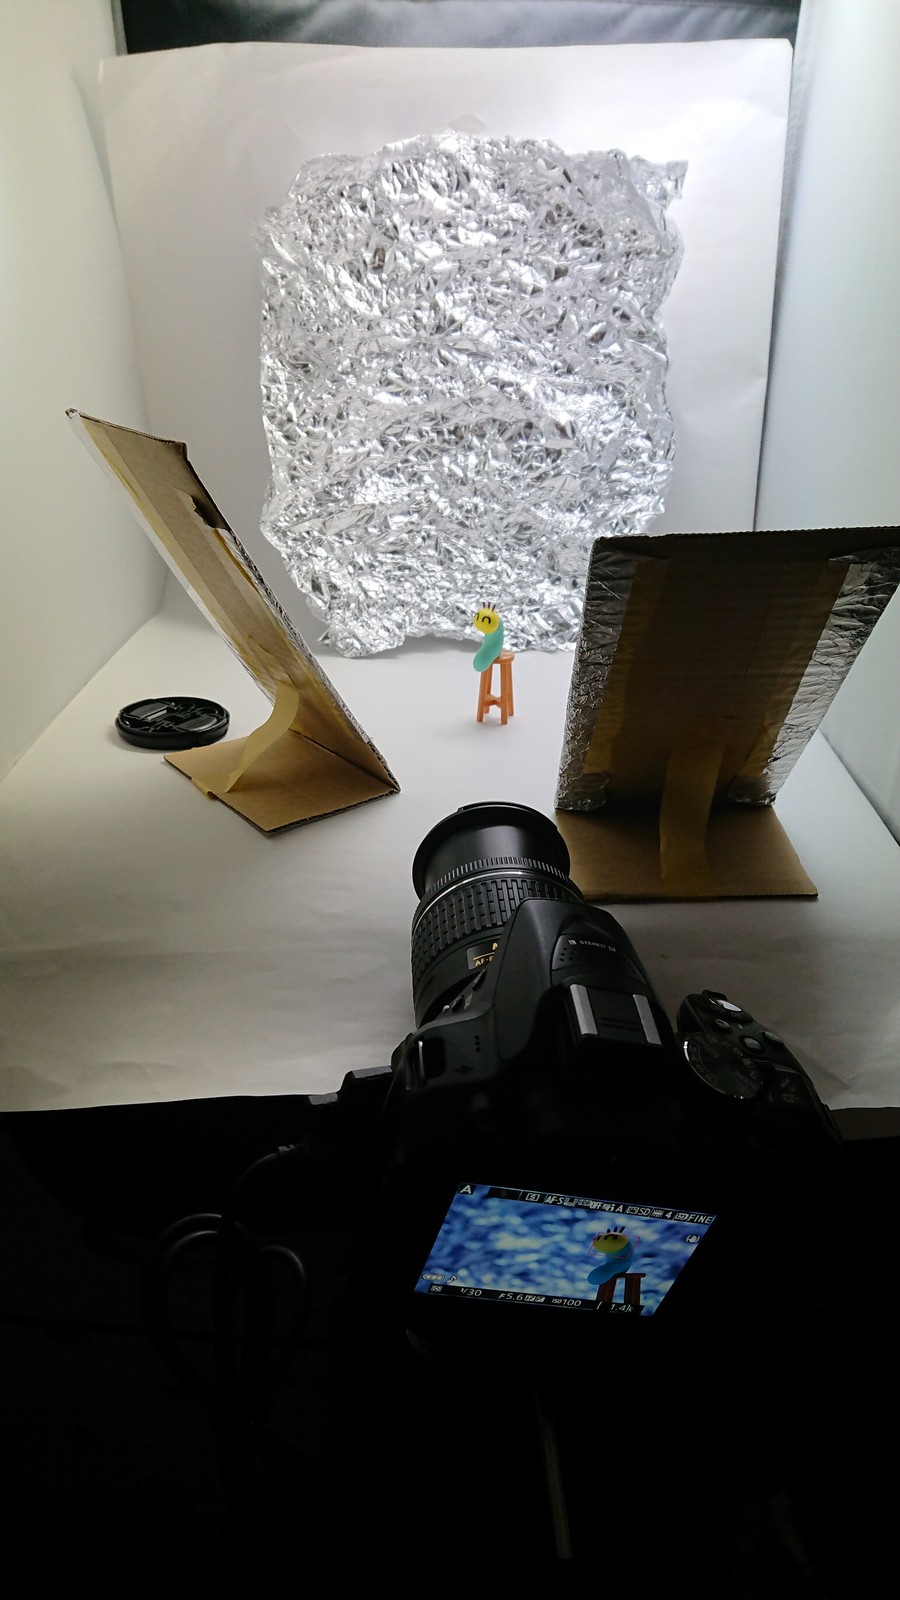 アルミホイルを背景に ホワイトバランスの使い方が生かされるフィギュア撮影 関節フィギュア庫